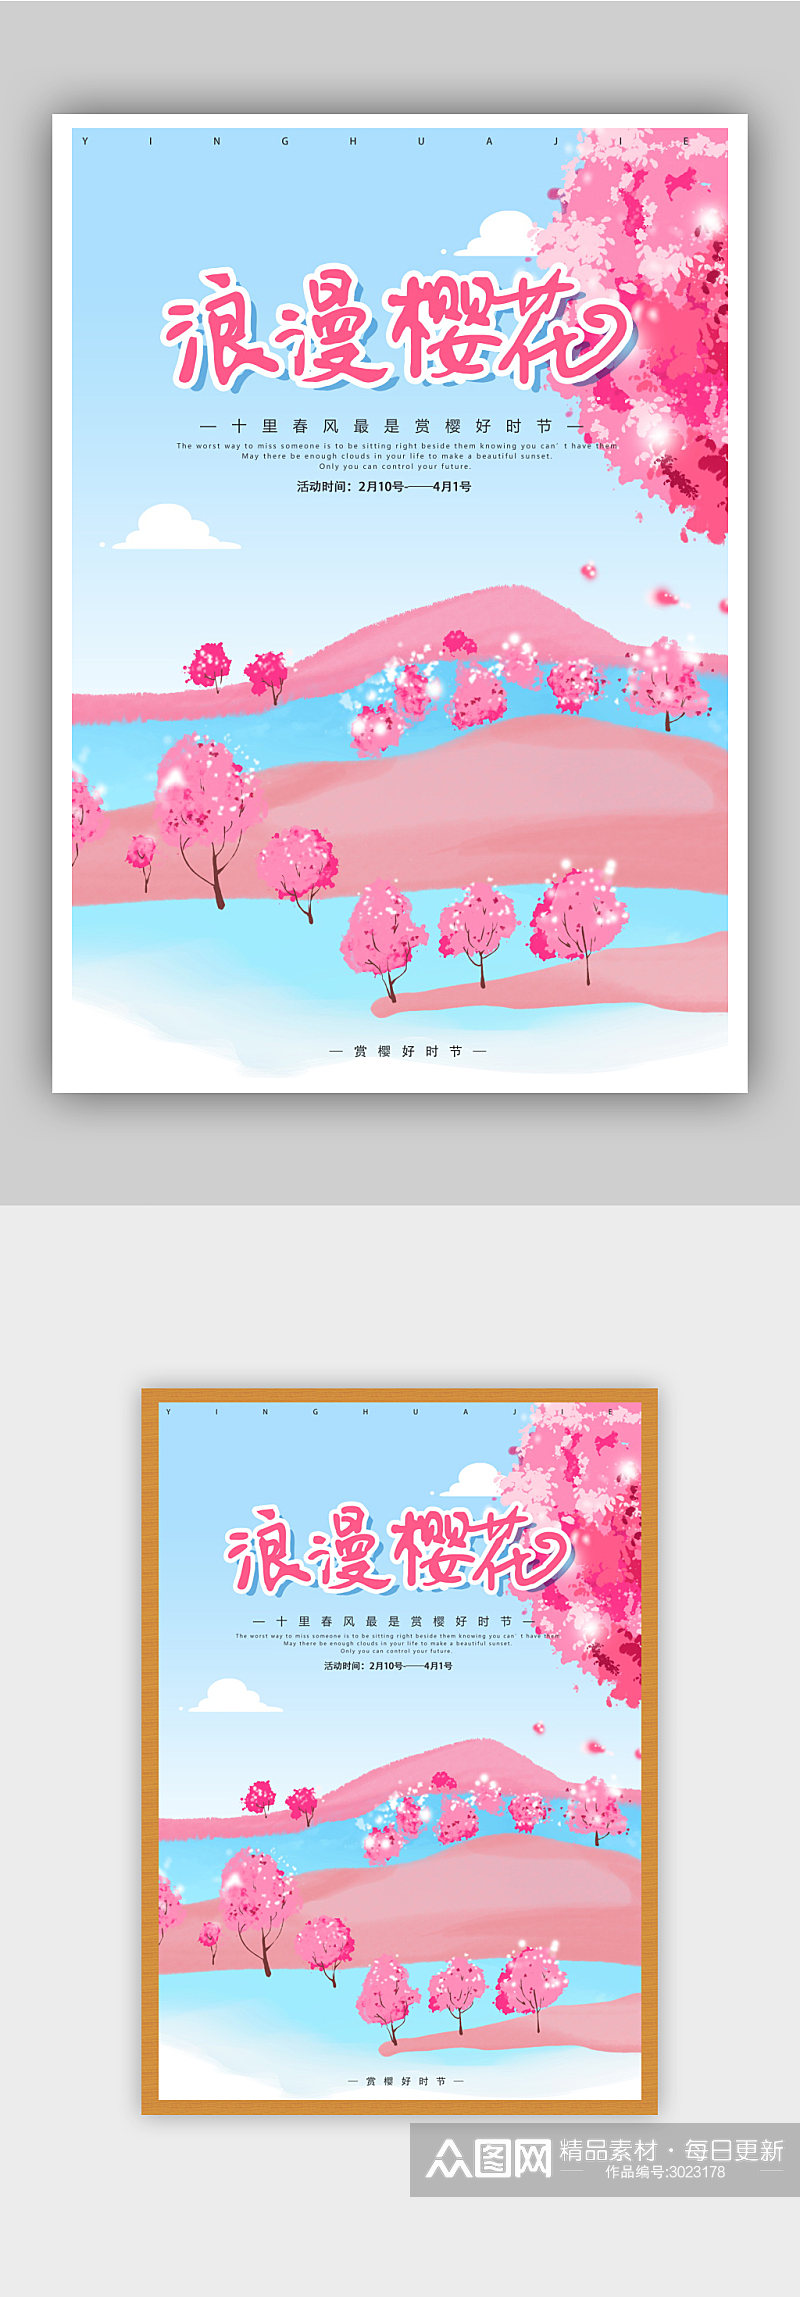 浪漫樱花季活动海报模板素材